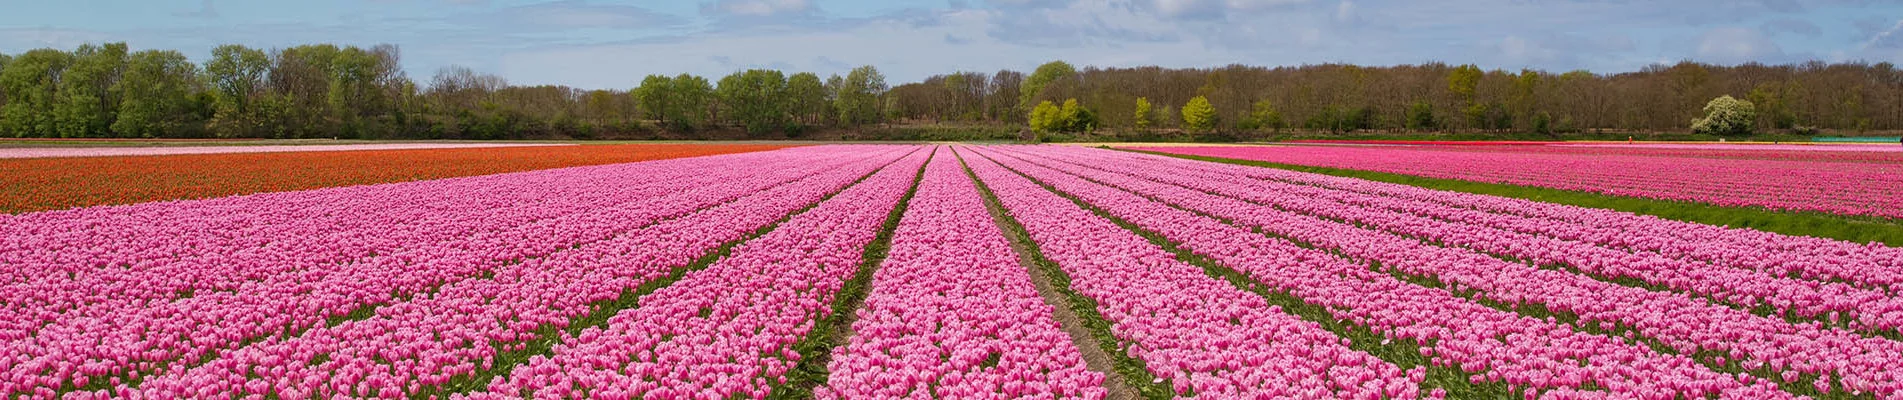 Выставка цветов в Нидерландах